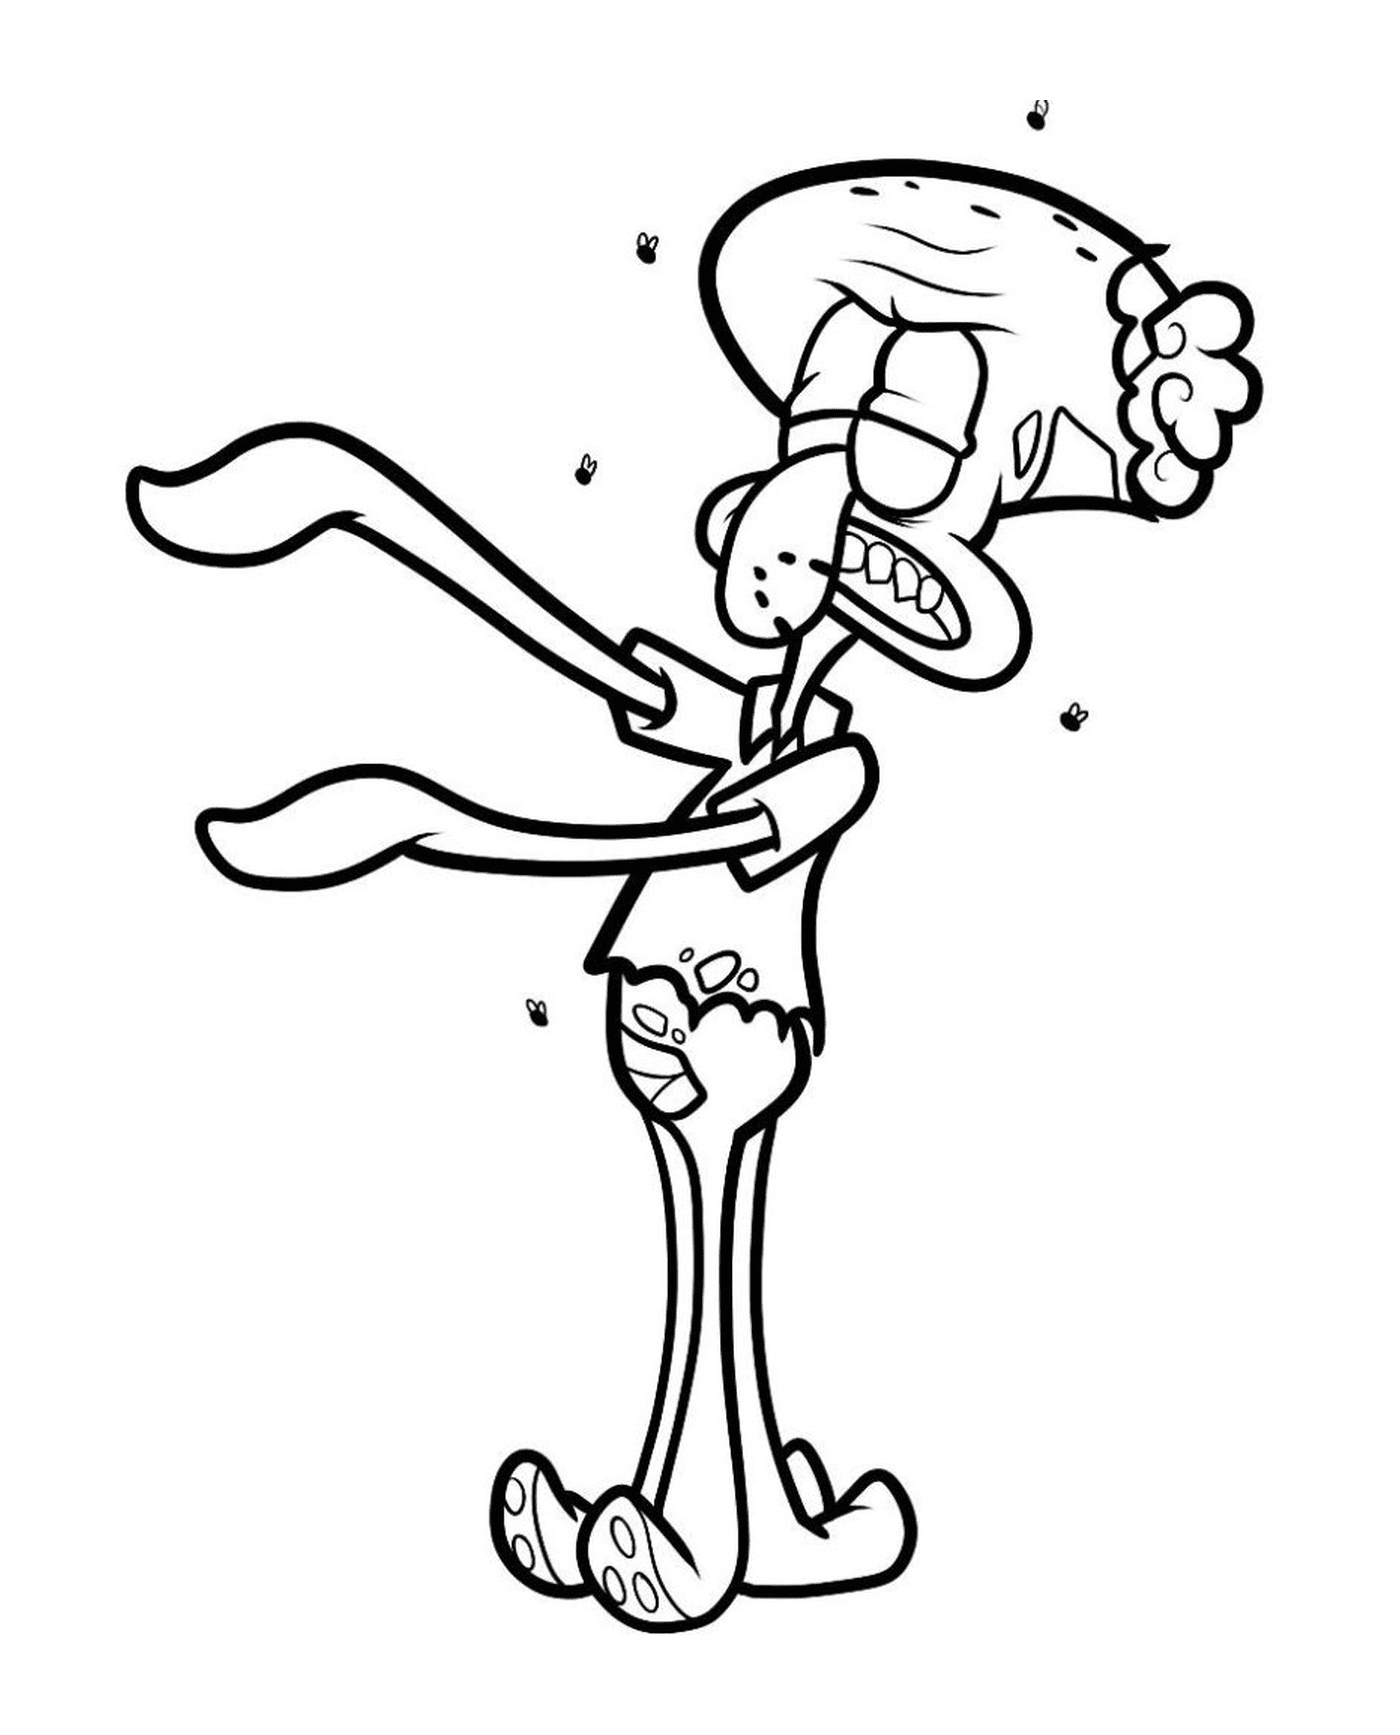   Squidward Tentacles, le zombie de Bob l'éponge 